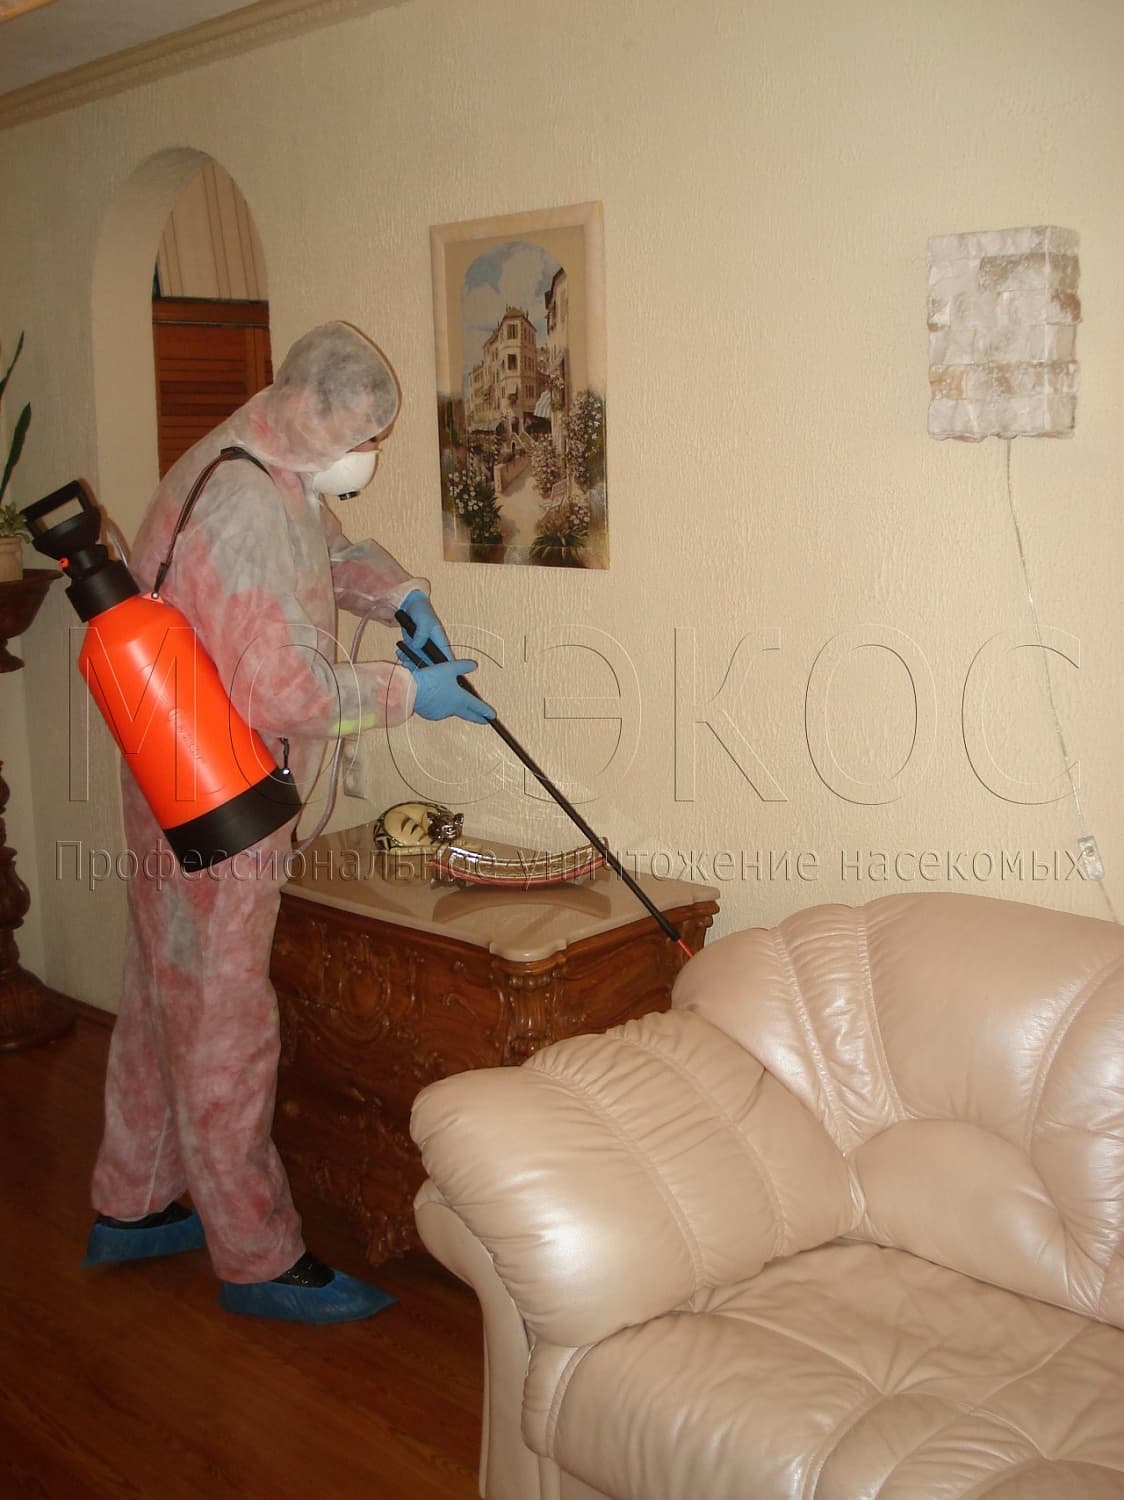 Клопы дома: как избавиться от паразитов в Домодедово